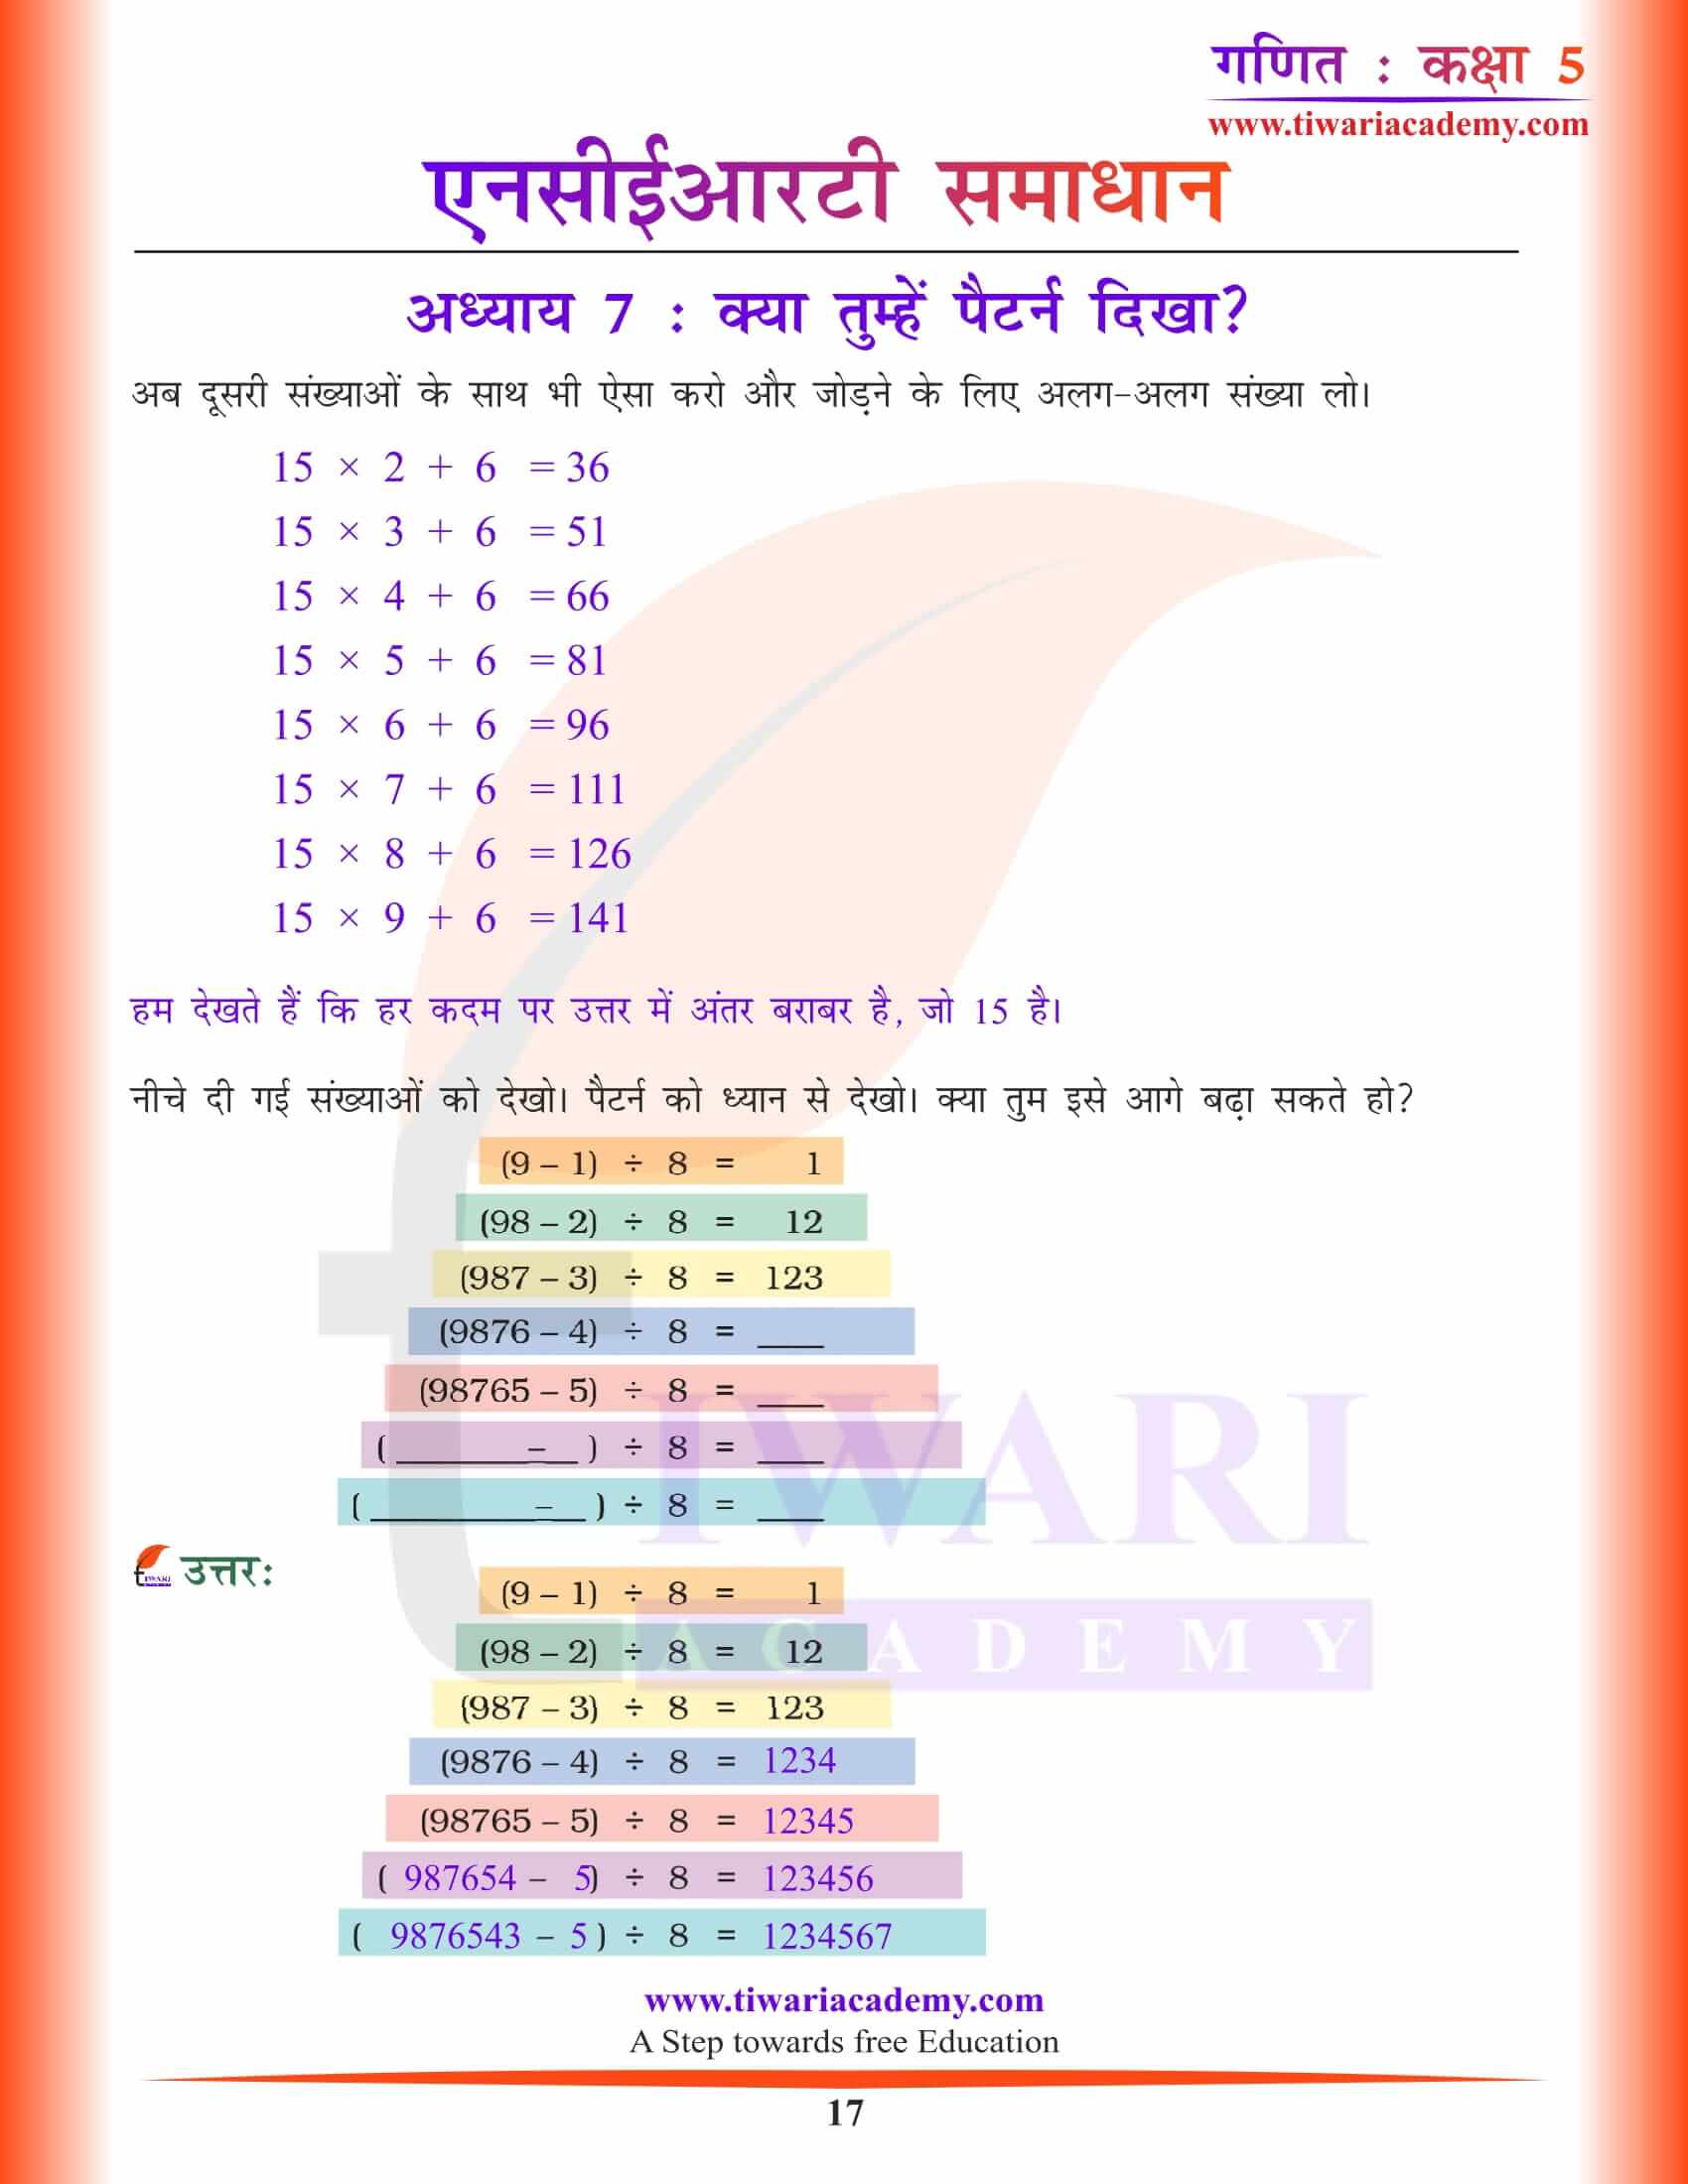 कक्षा 5 गणित अध्याय 7 के हल हिंदी में